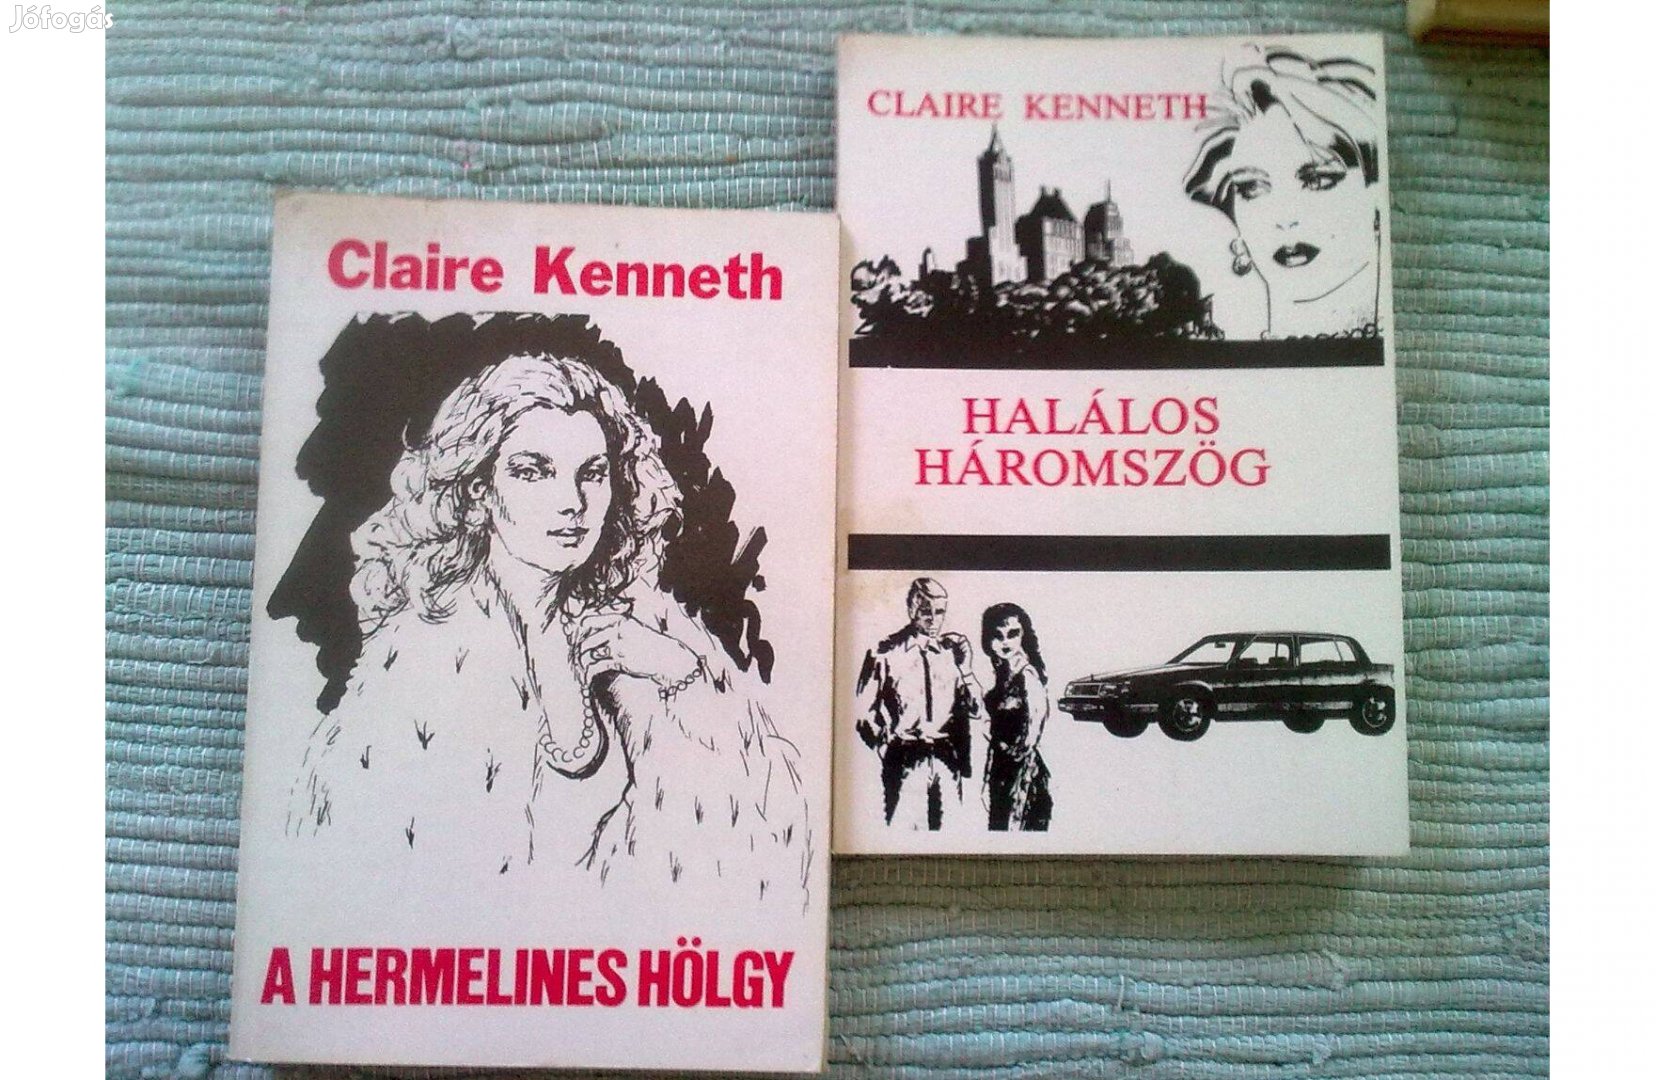 Claire Kenneth: A hermelines hölgy és a Halálos háromszög